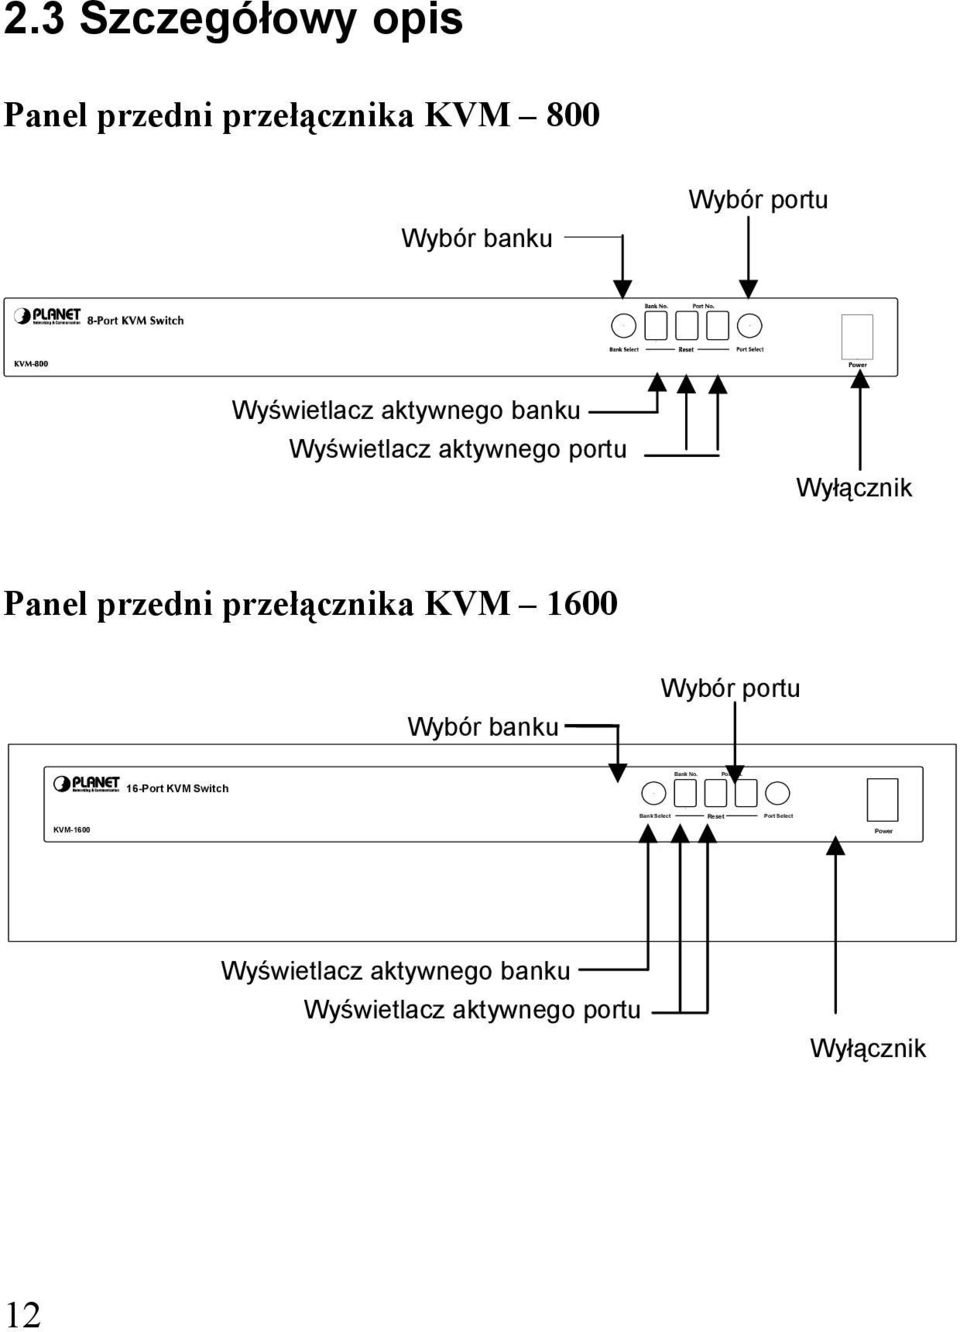 przełącznika KVM 1600 Wybór banku Wybór portu 16-Port KVM Switch Bank No. Port No.